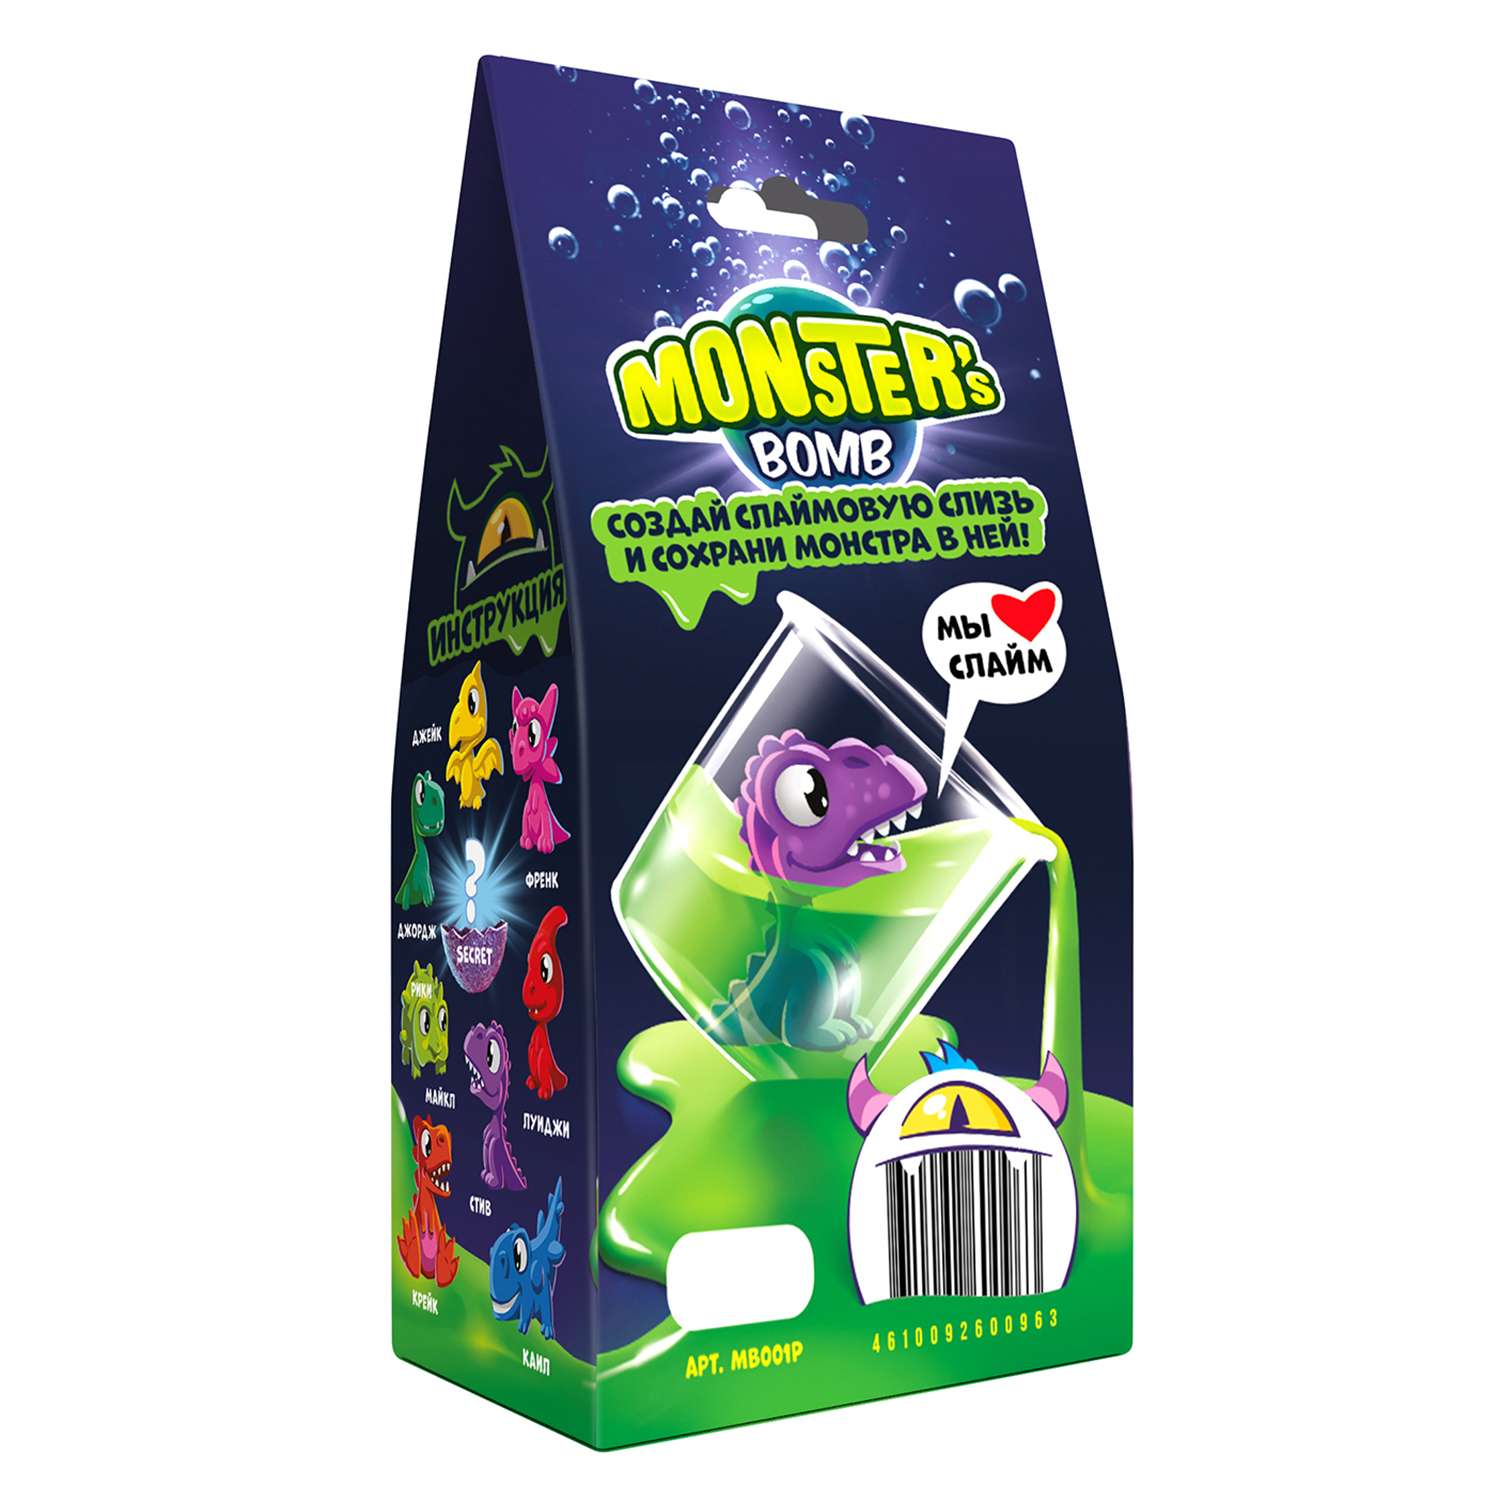 Набор химический Monsters bomb с игрушкой MB002P - фото 3